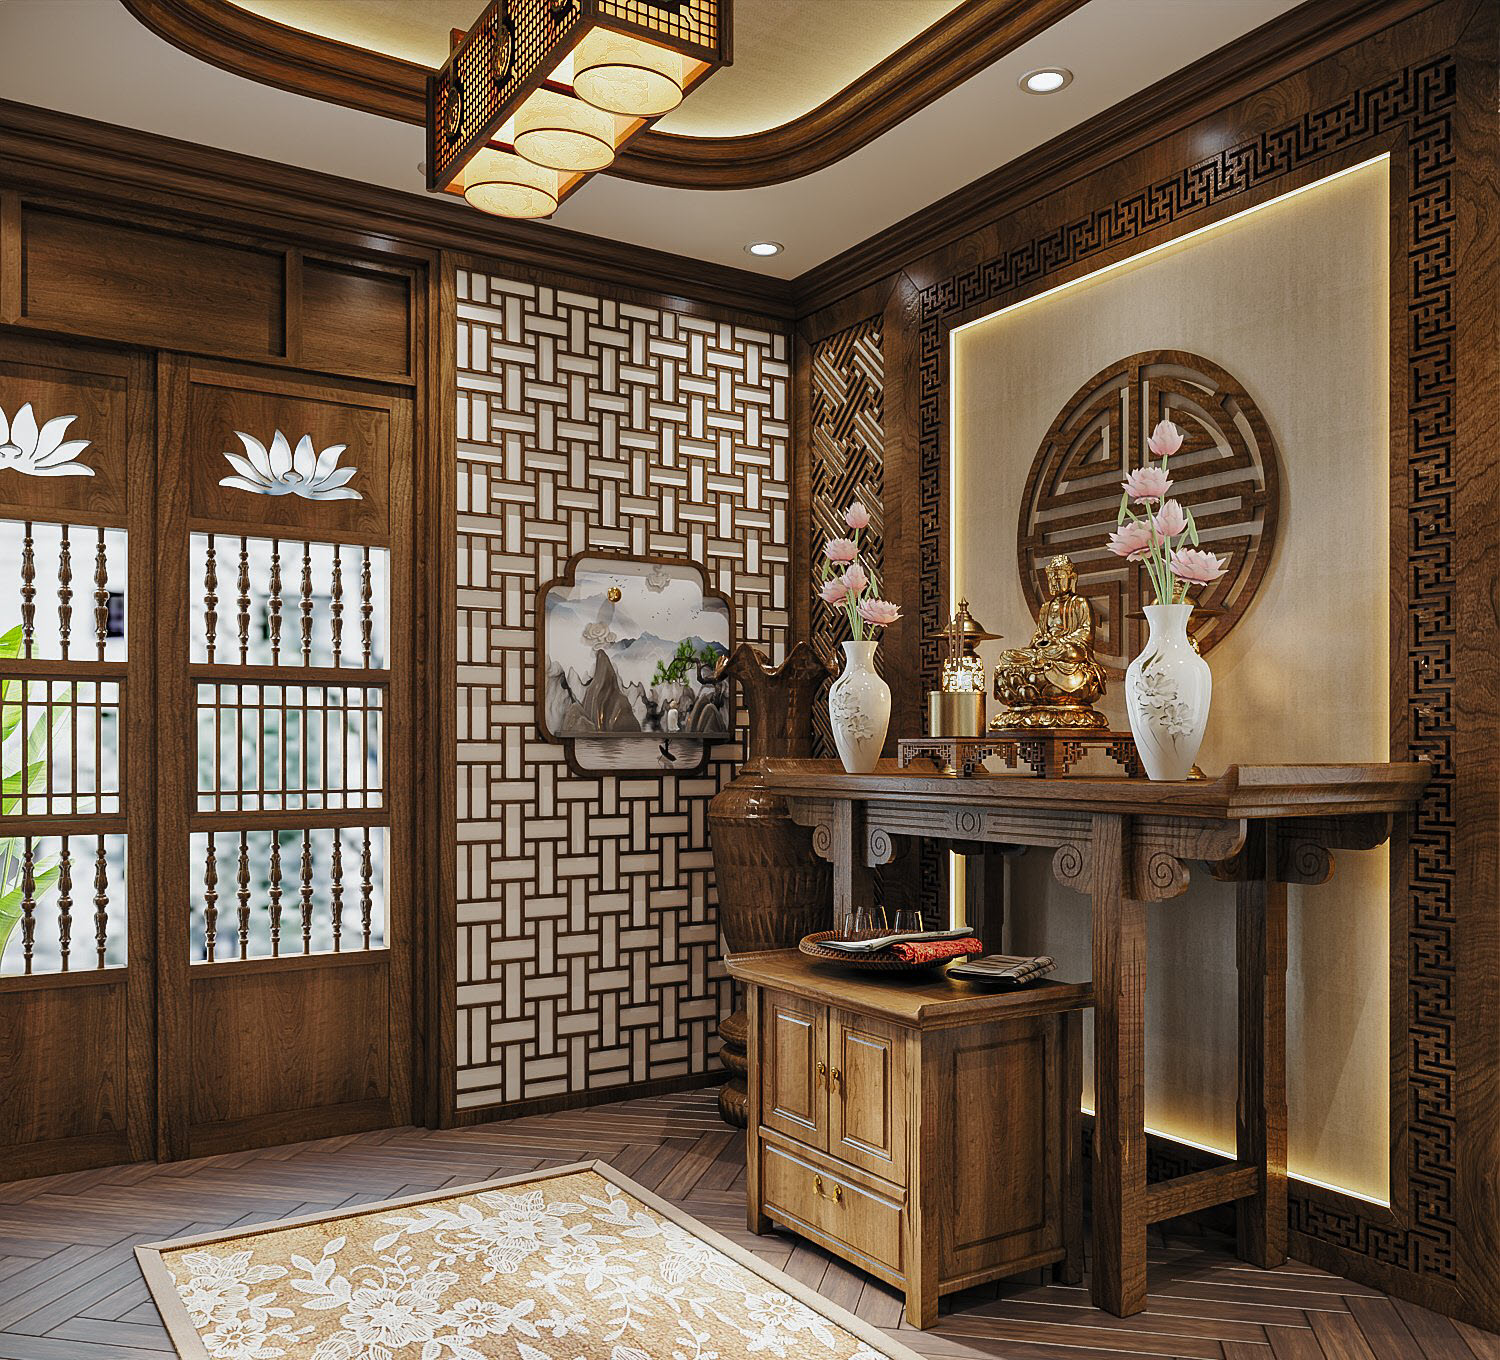 Các đường nét thiết kế nội thất thể hiện rõ phong cách Đông Dương truyền thống.